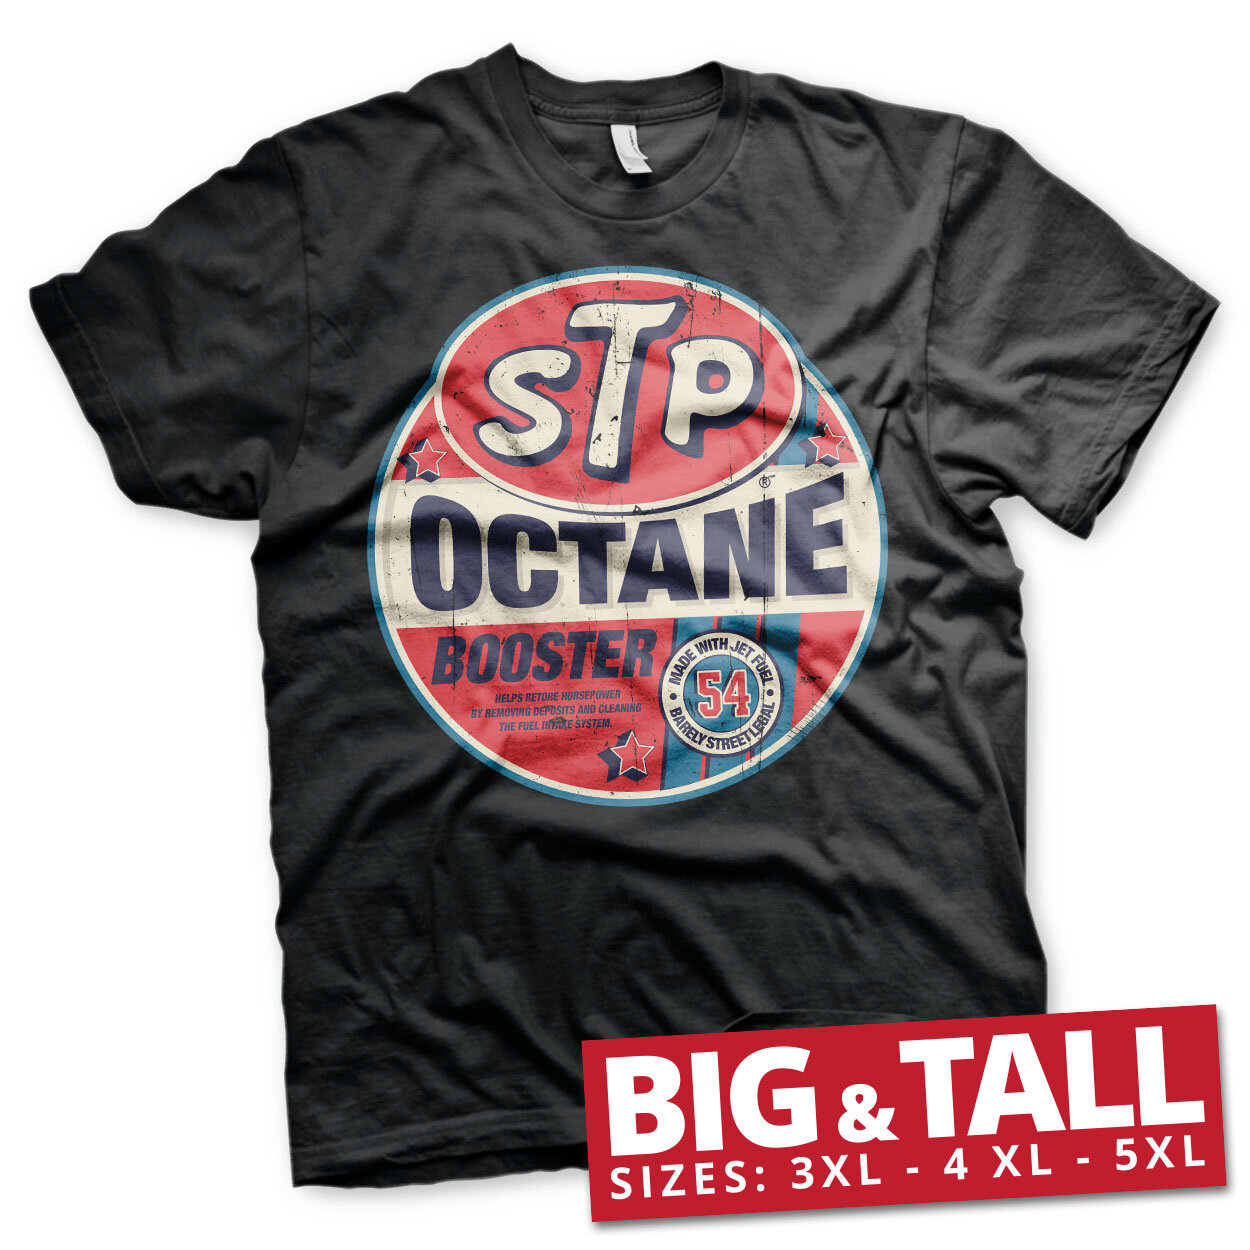 STP Octane Booster Big & Tall T-Shirt